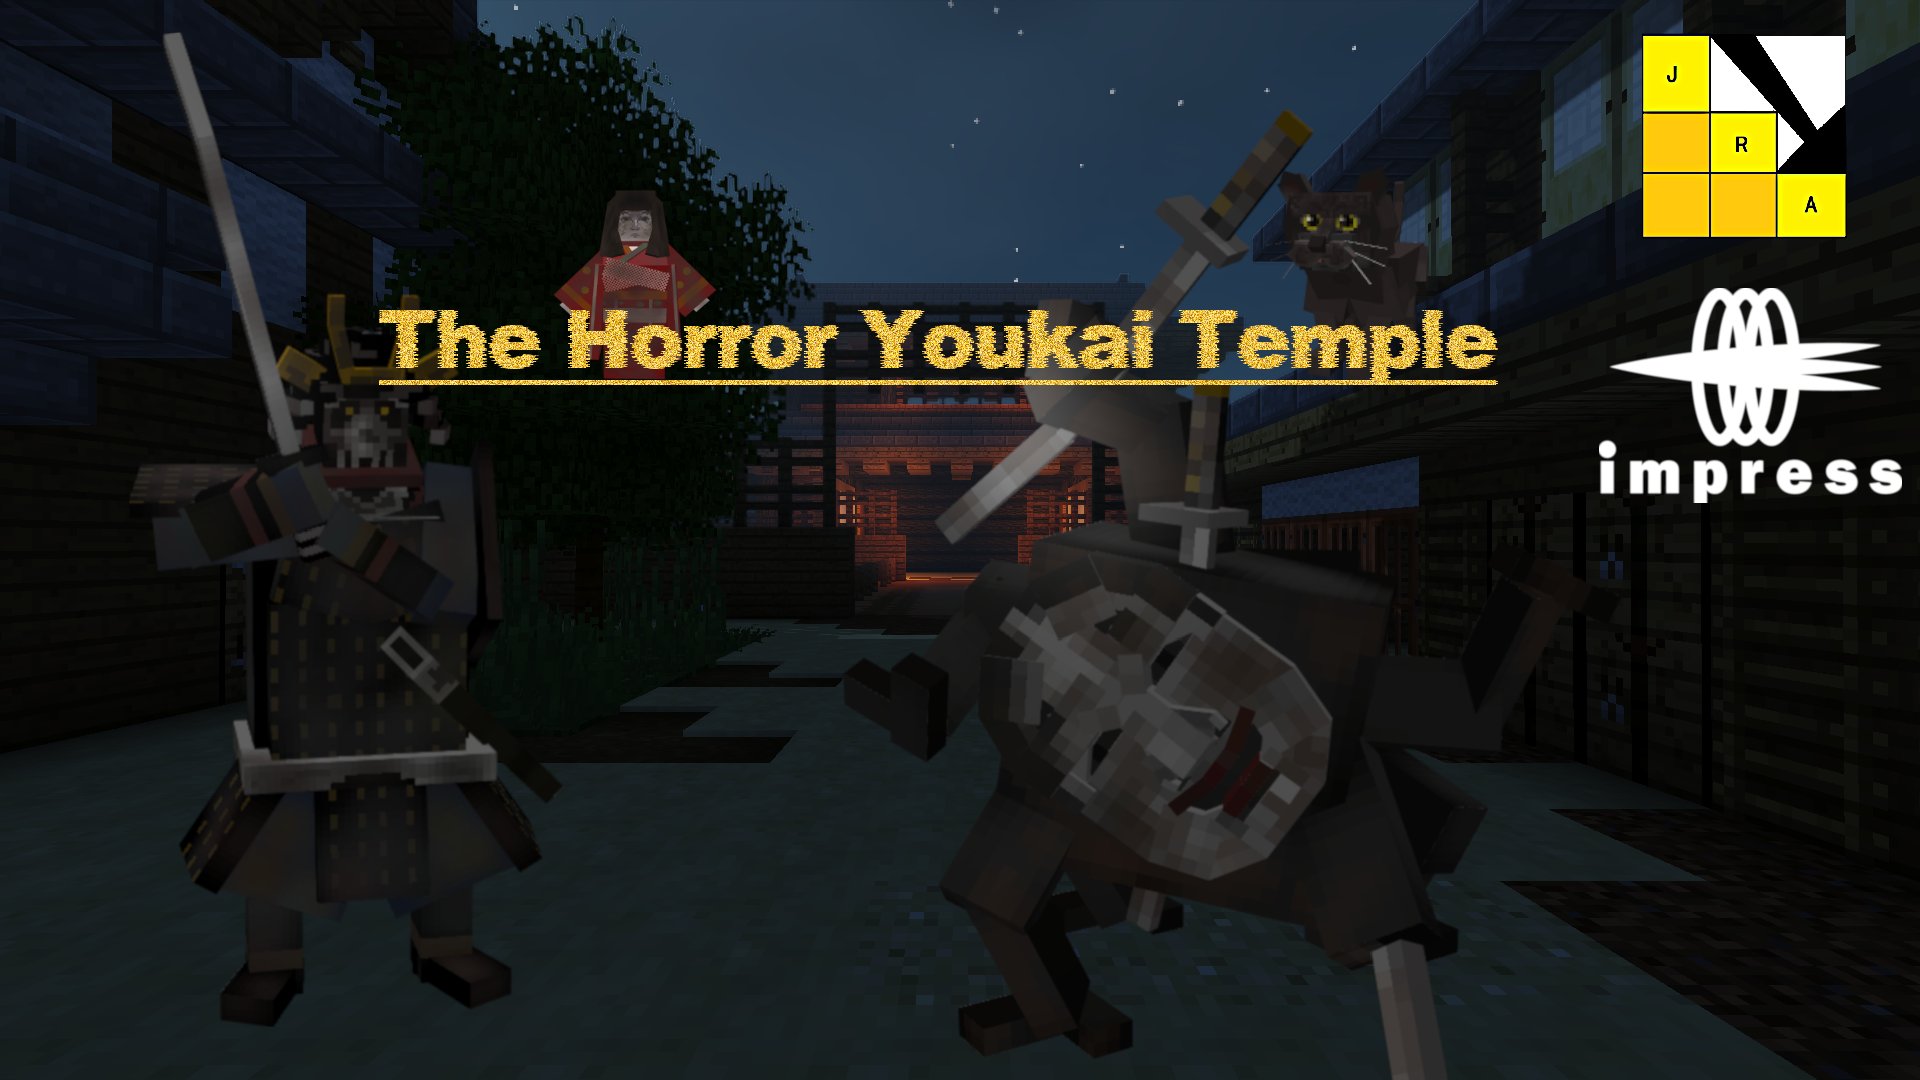 日本ローグライク協会制作ワールド The Horror Youkai Temple がリリースされました Japan Crafters Union